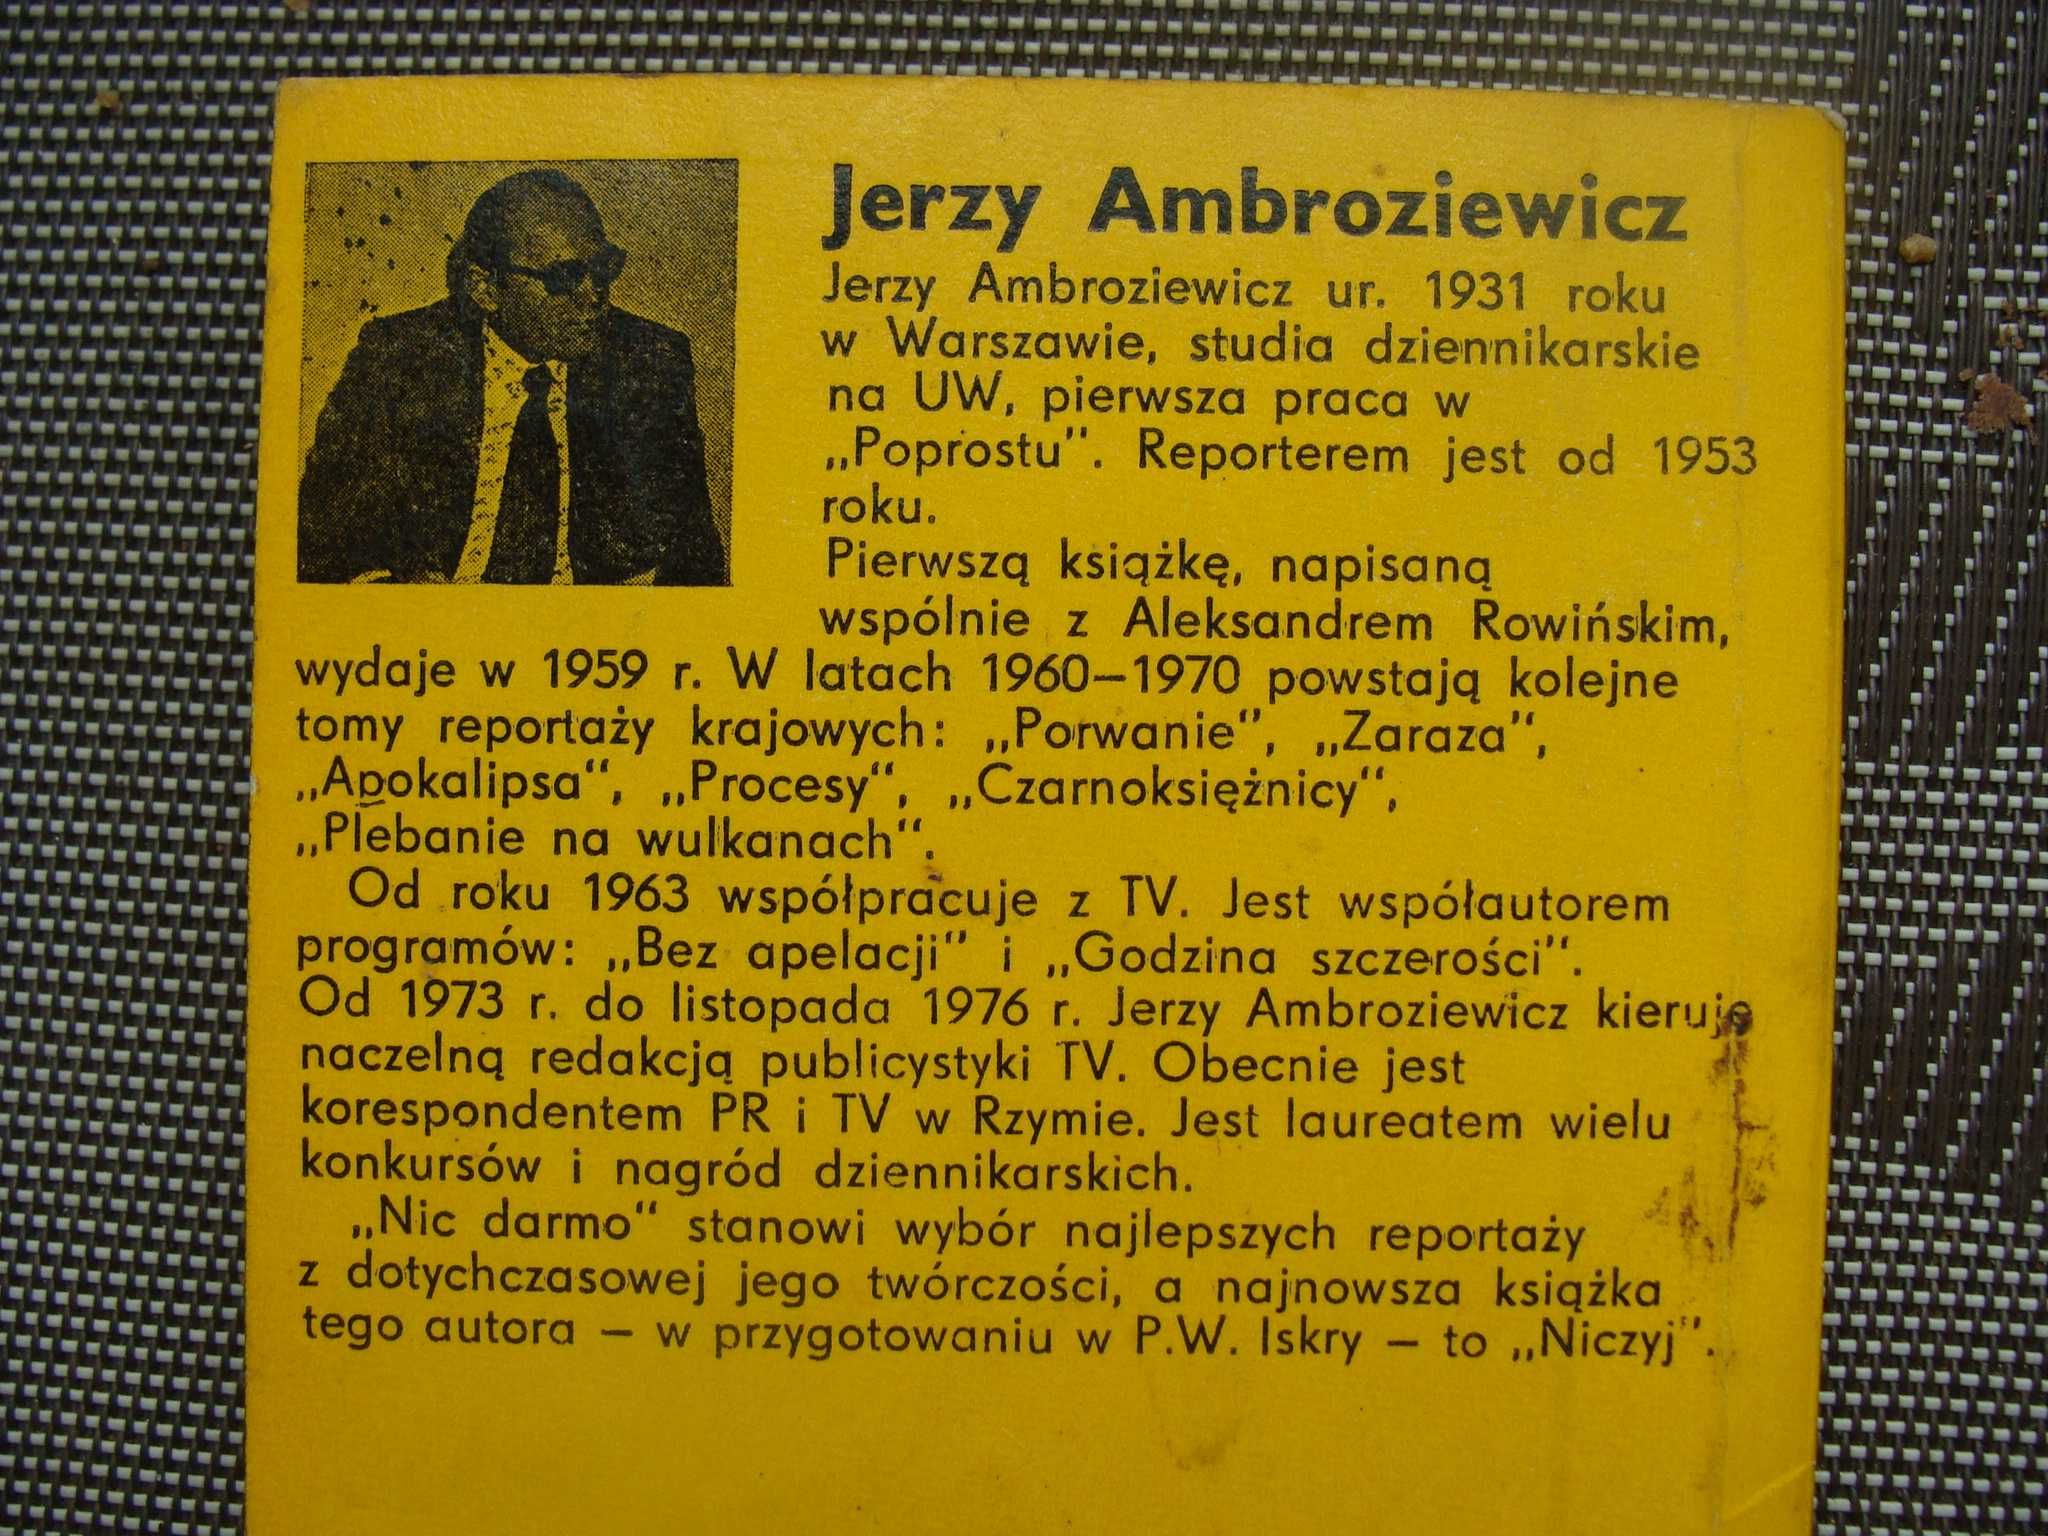 Nic darmo - Jerzy Ambroziewicz (M)